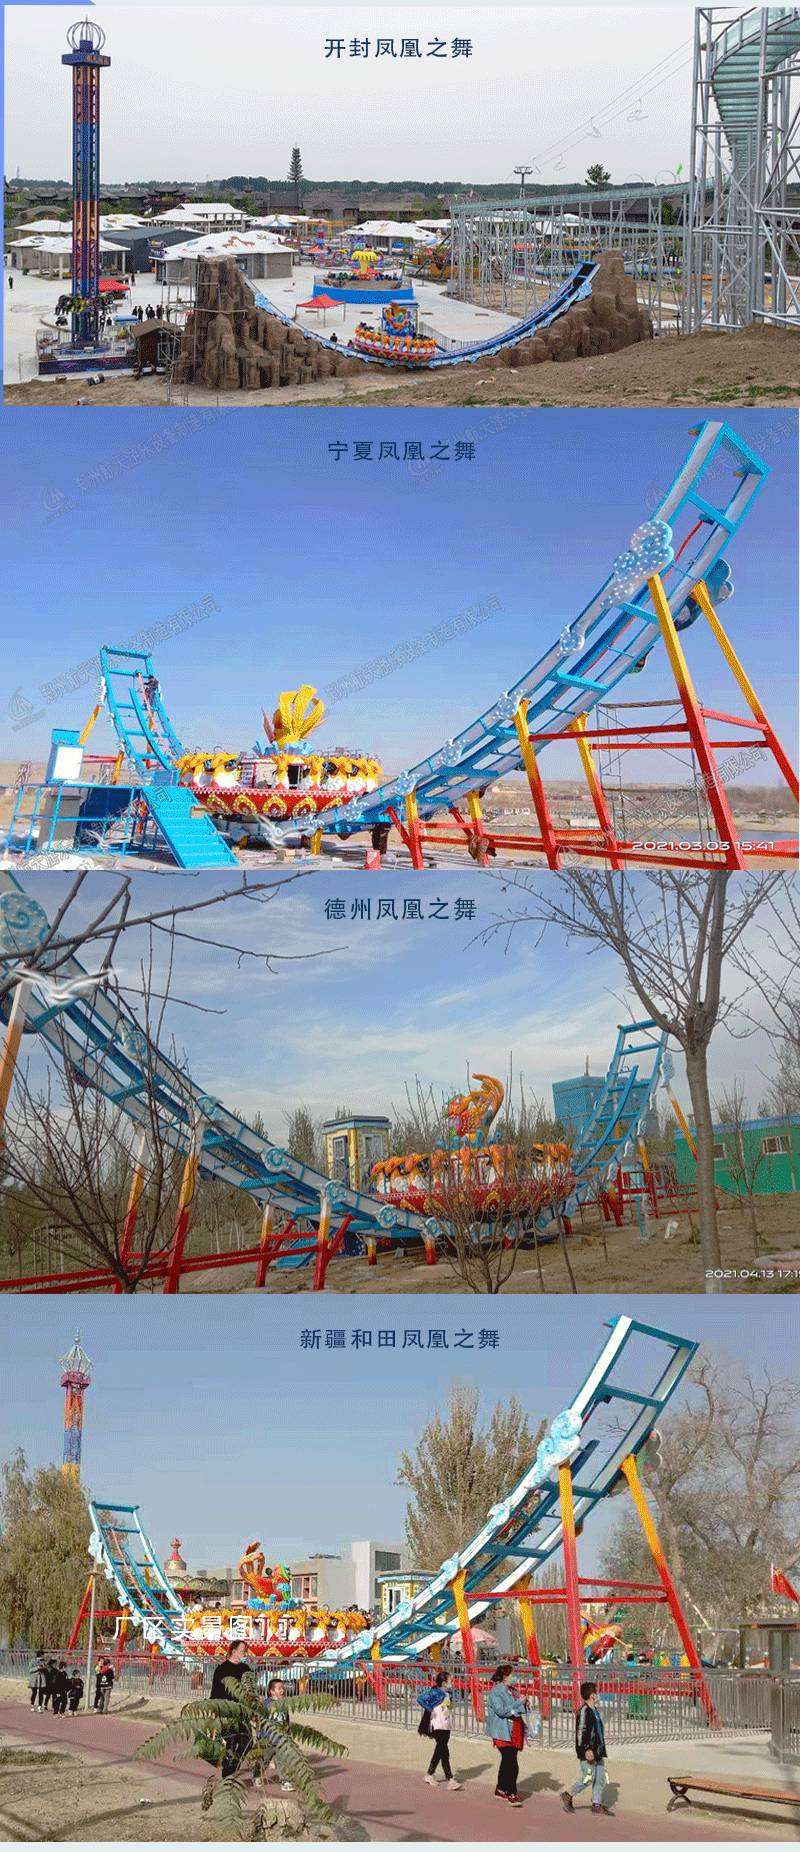 郑州生产大型轨道飞碟游乐园设施航天游乐报价 4